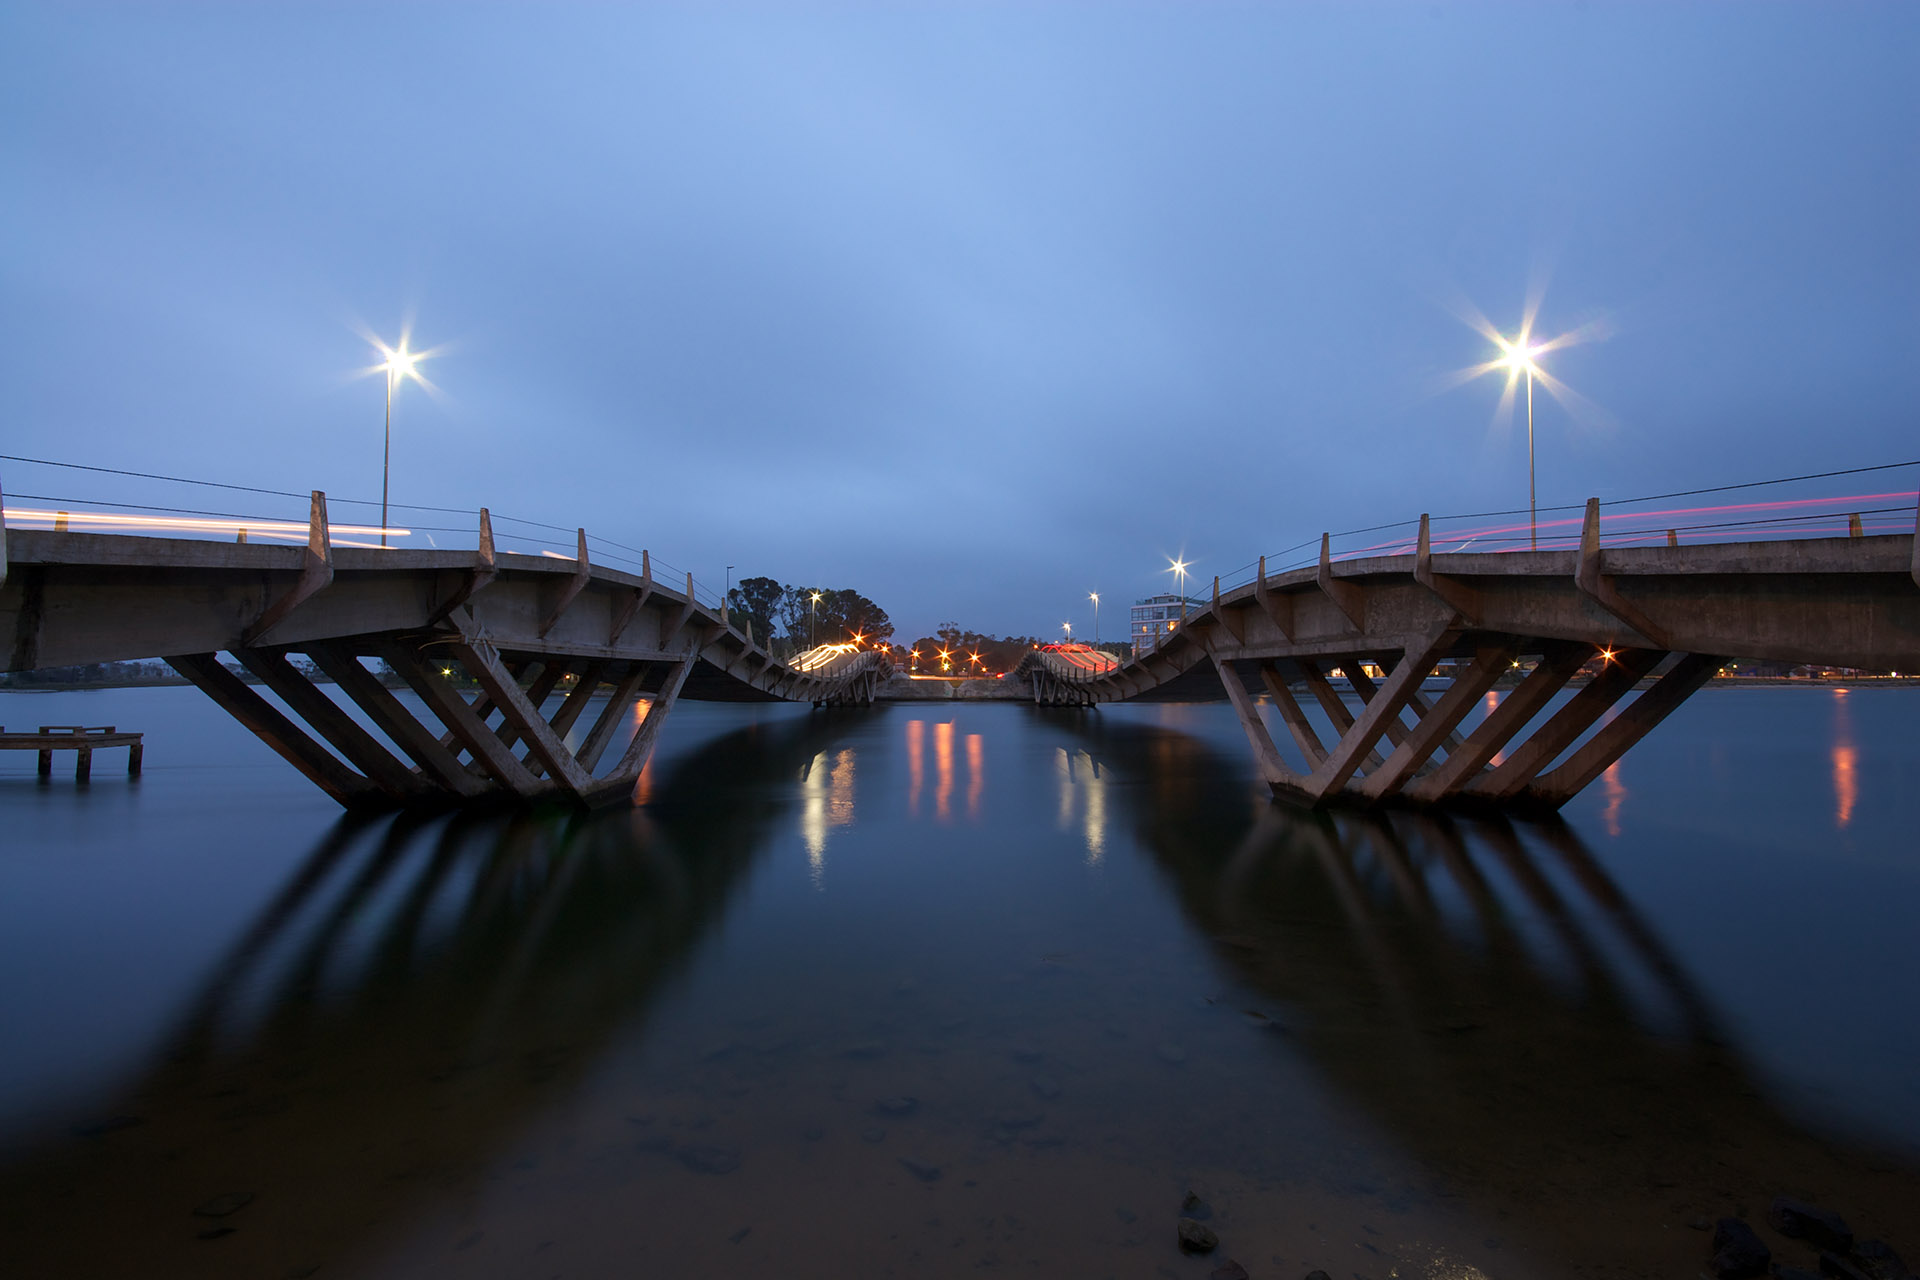 El viernes se inaugurarán las obras que se realizaron en la ruta Interbalnearia para mejorar el flujo del tránsito en la ruta que une Montevideo con la costa este durante la temporada

Foto: Puente de La Barra - Punta del Este (Getty Images)